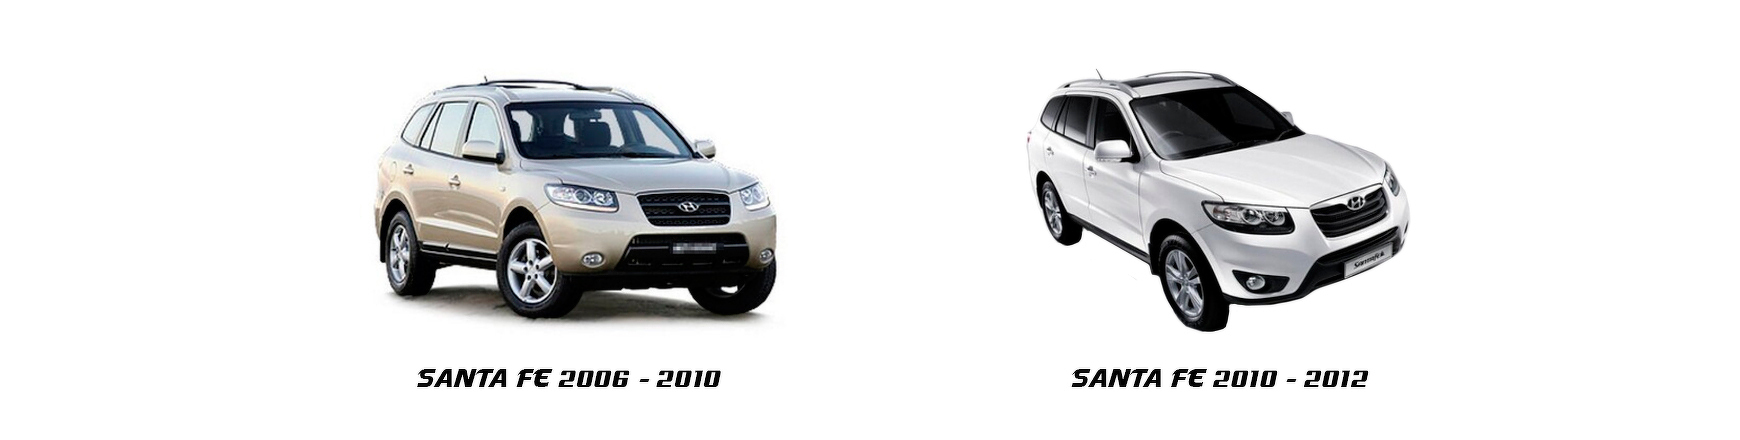 Piezas y Recambios de Hyundai Santa Fe (CM) de 2009 a 2012 | Veramauto.es